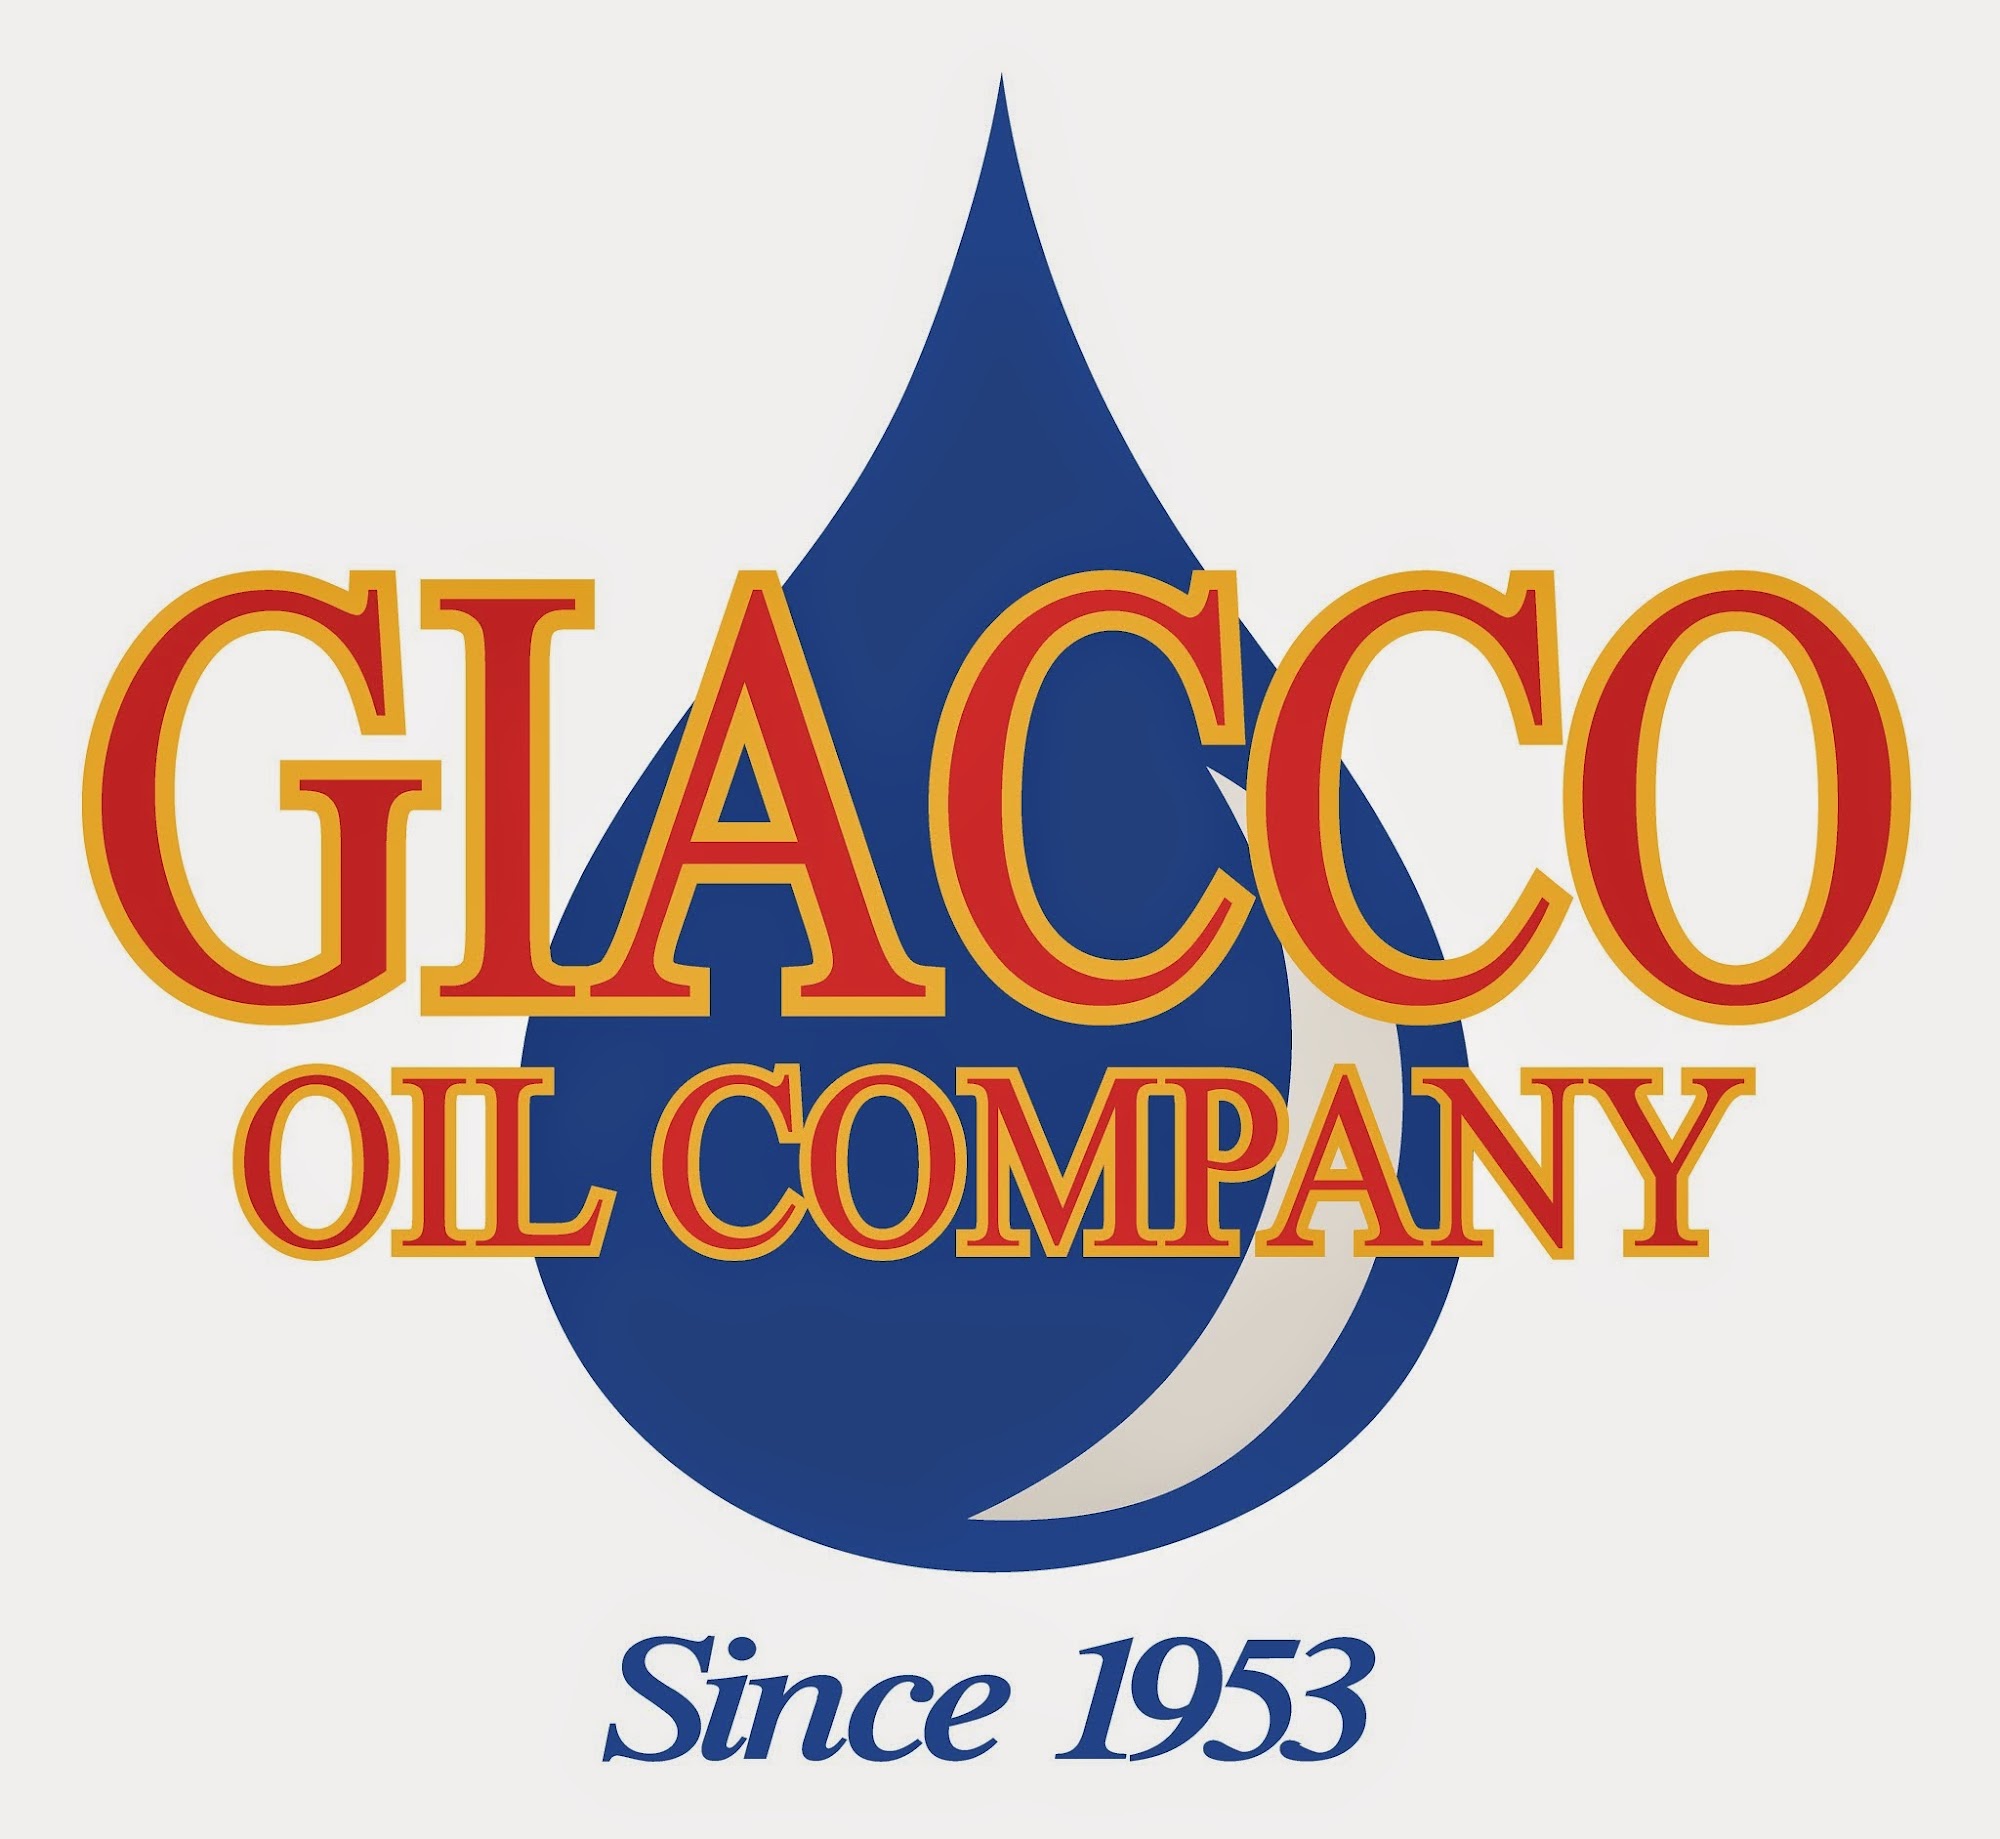 Giacco Oil